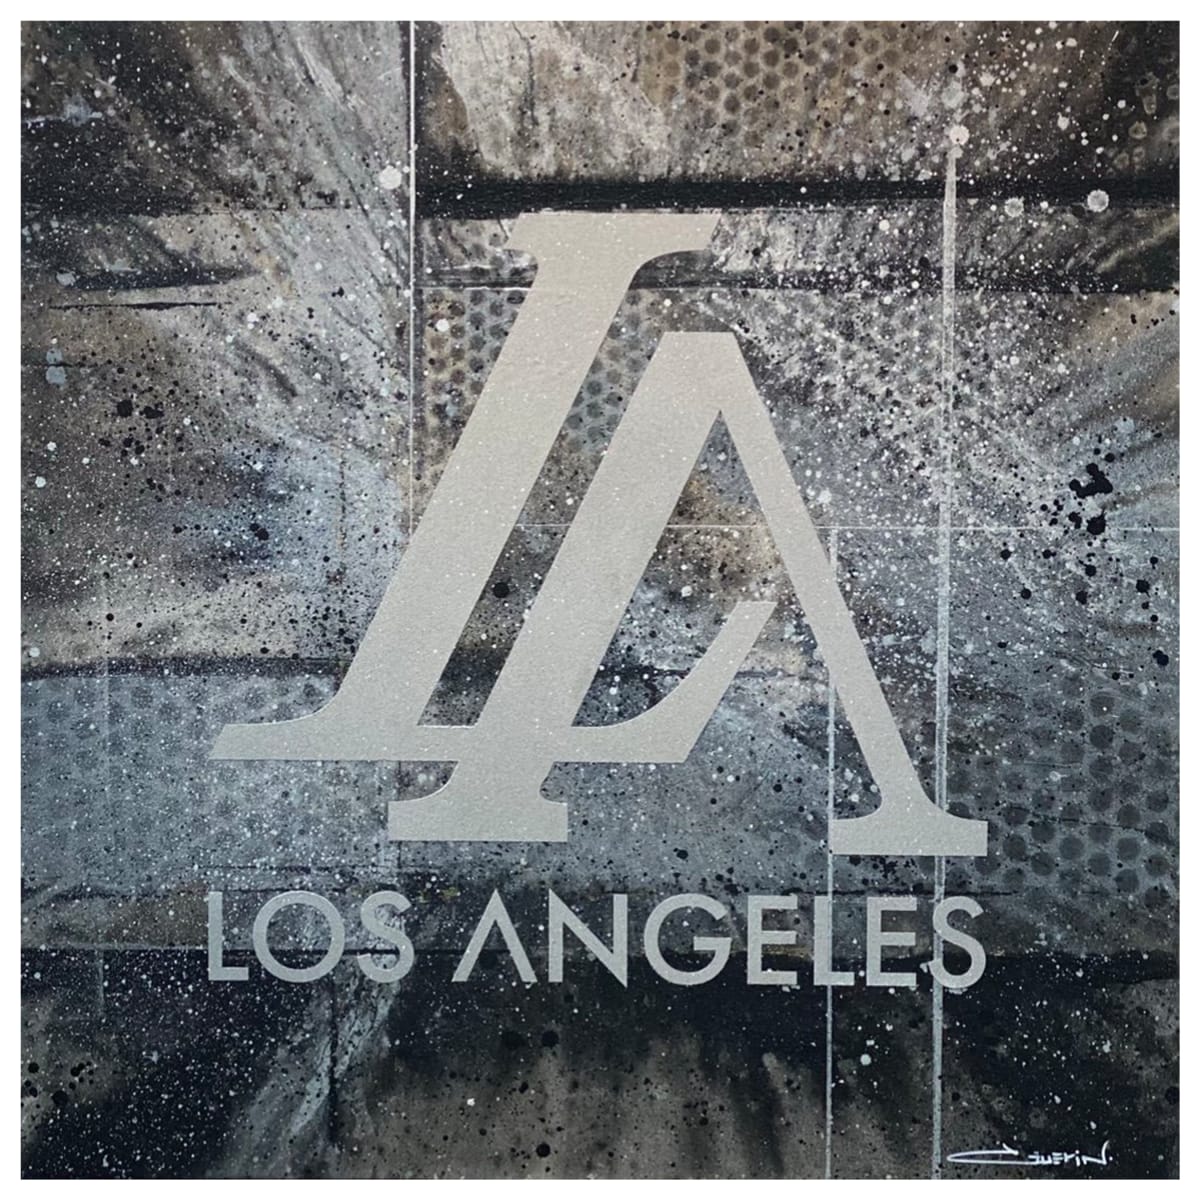 L.A. Platinum by Guerin Swing  Image: L.A. Platinum 